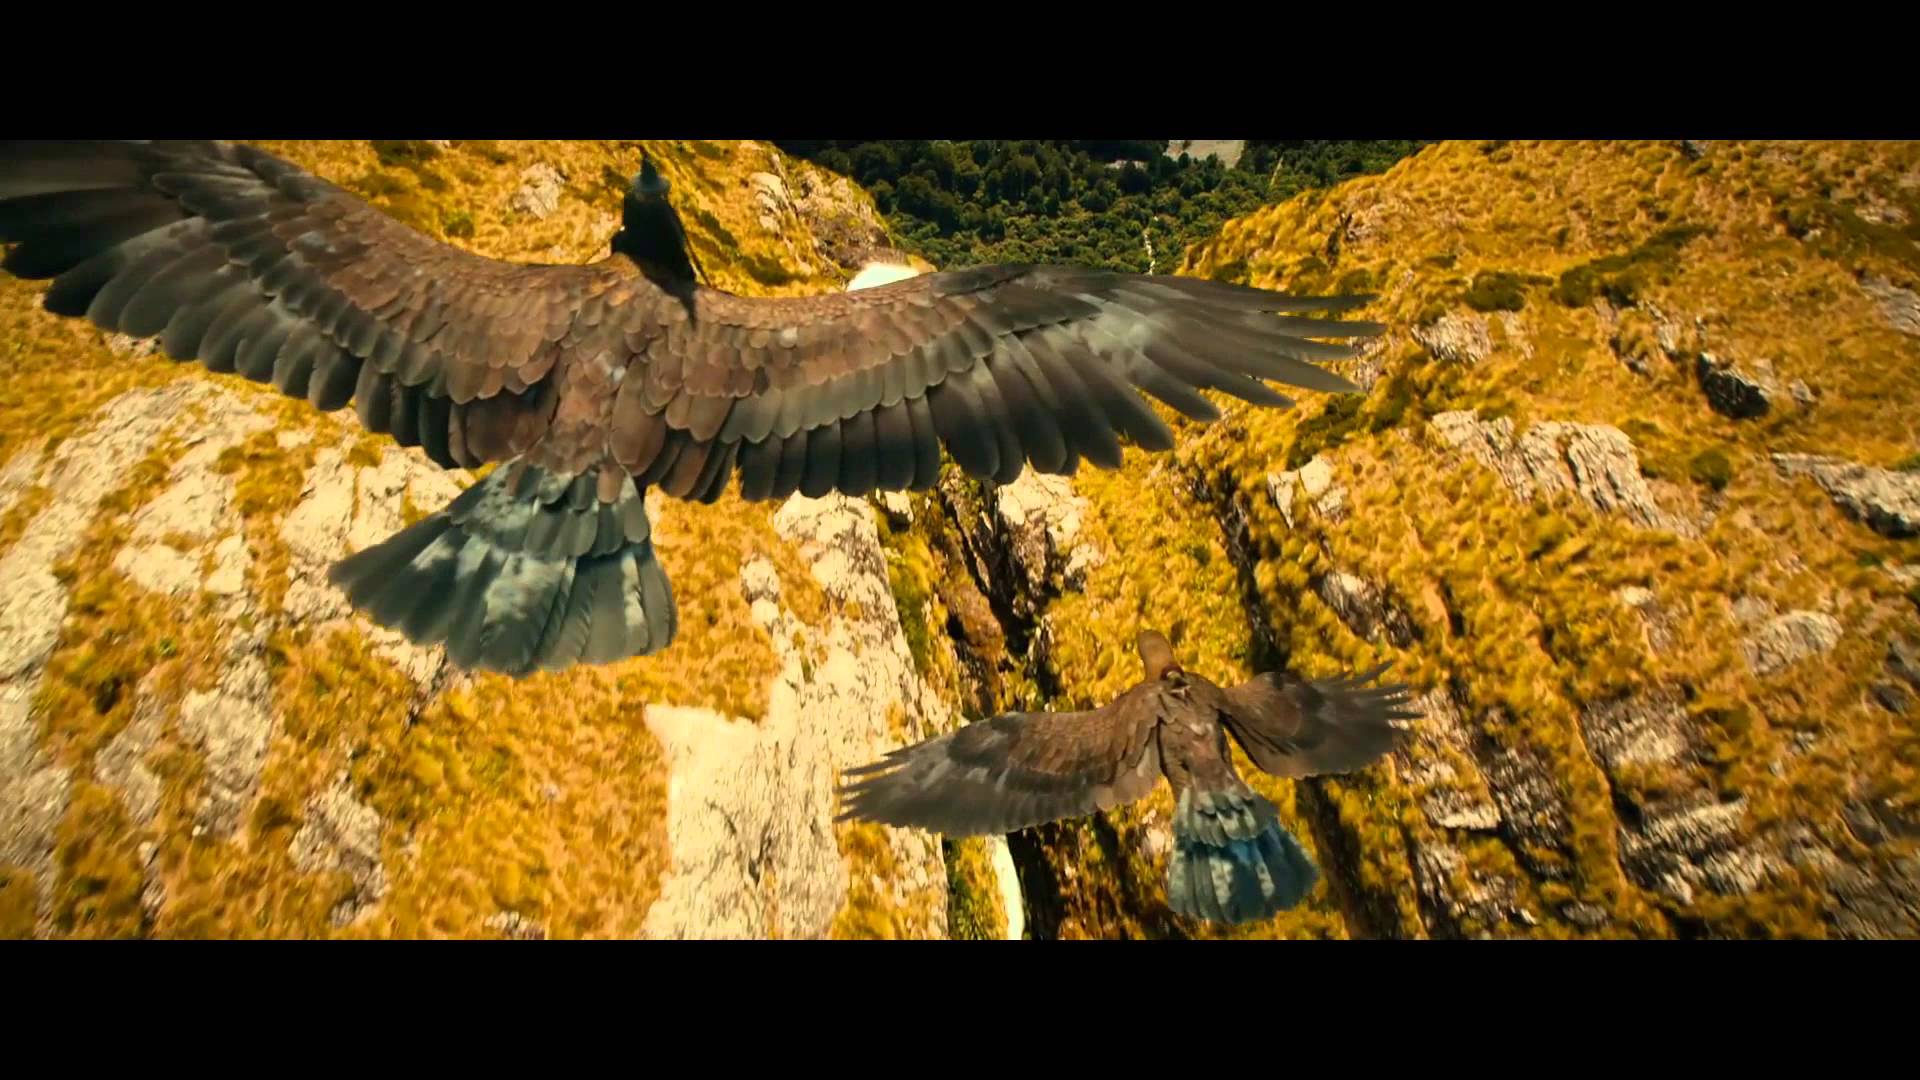 Golden Eagles Wallpaper - Riding Eagles The Hobbit - HD Wallpaper 